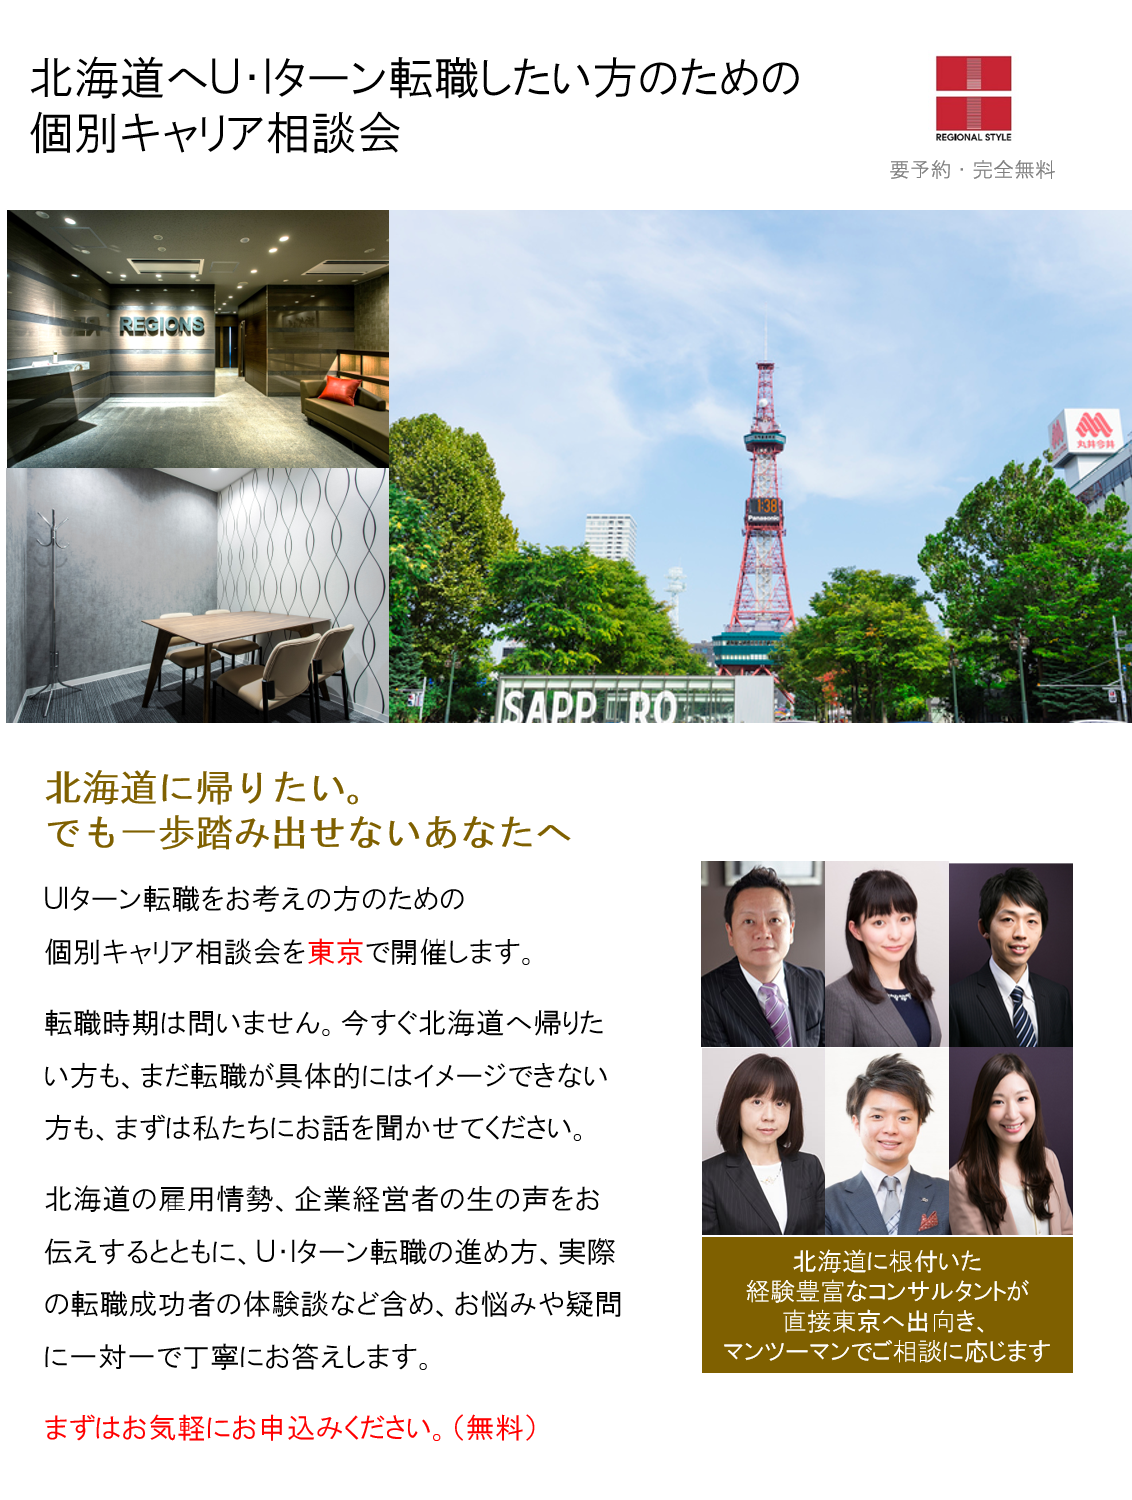 http://www.regional.co.jp/career_mt/060809sapporo.png